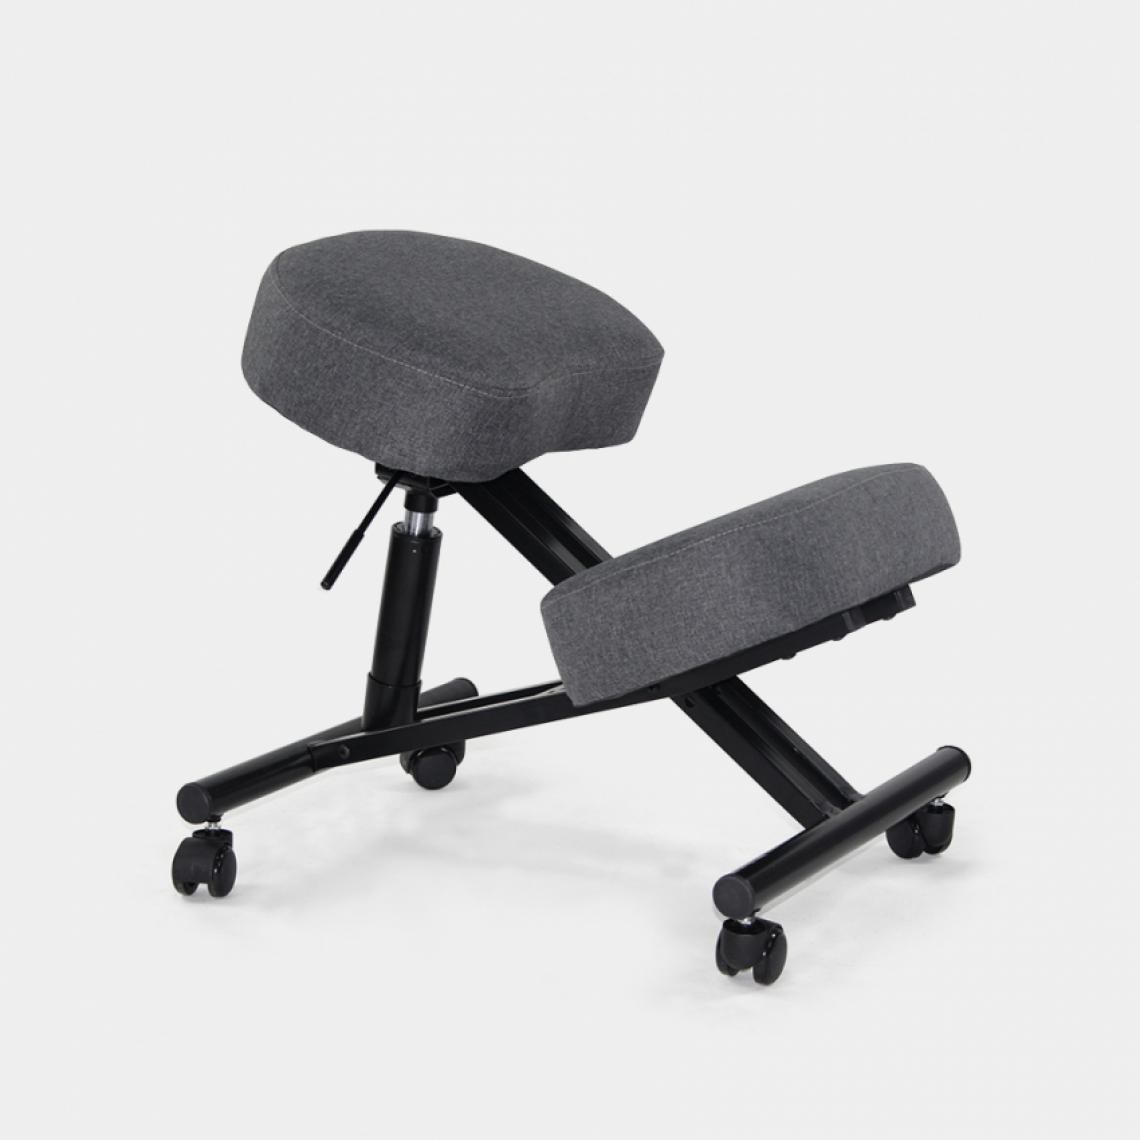 Bodyline - Healt And Massage - Chaise orthopédique suédoise ergonomique en tissu et en métal Balance Lux, Couleur: Gris foncé - Chaises